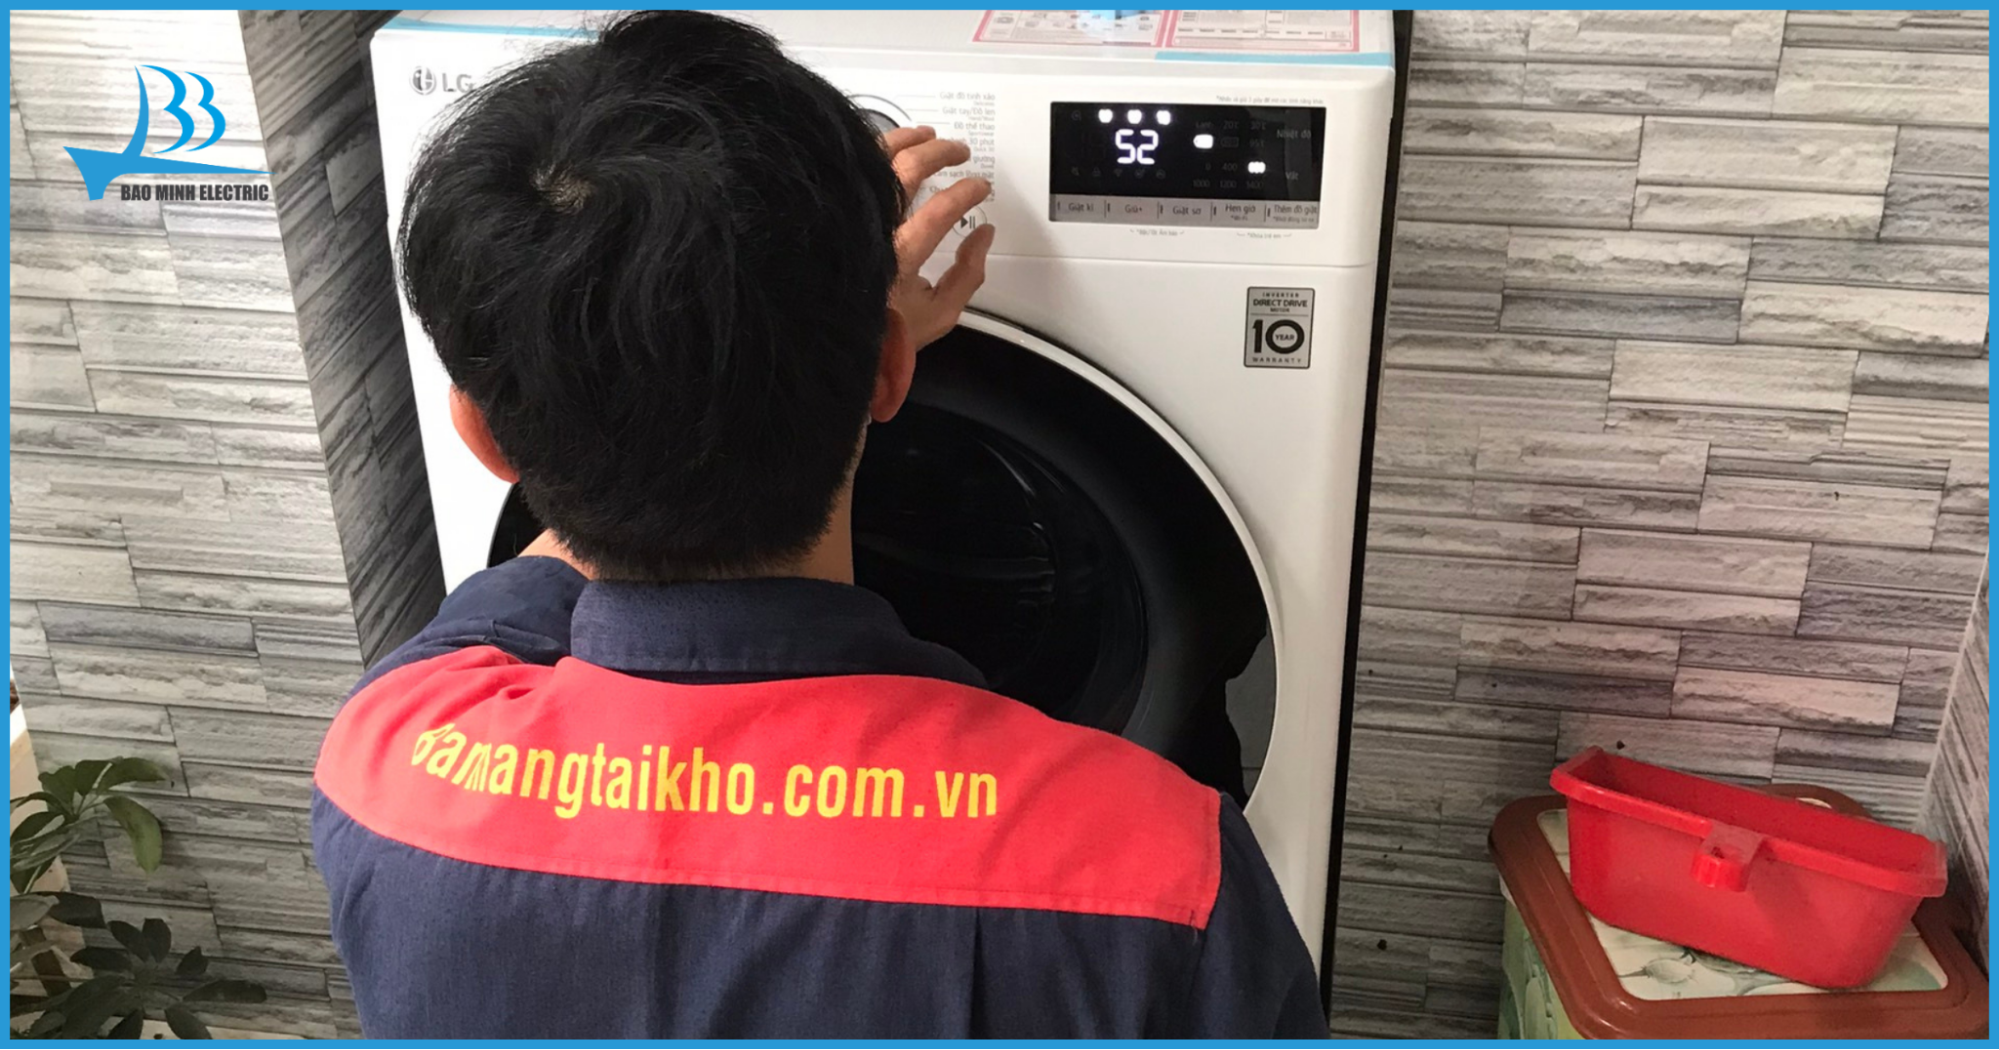 Lắp đặt máy giặt tại nhà cho khách hàng khi mua tại điện máy Bảo Minh